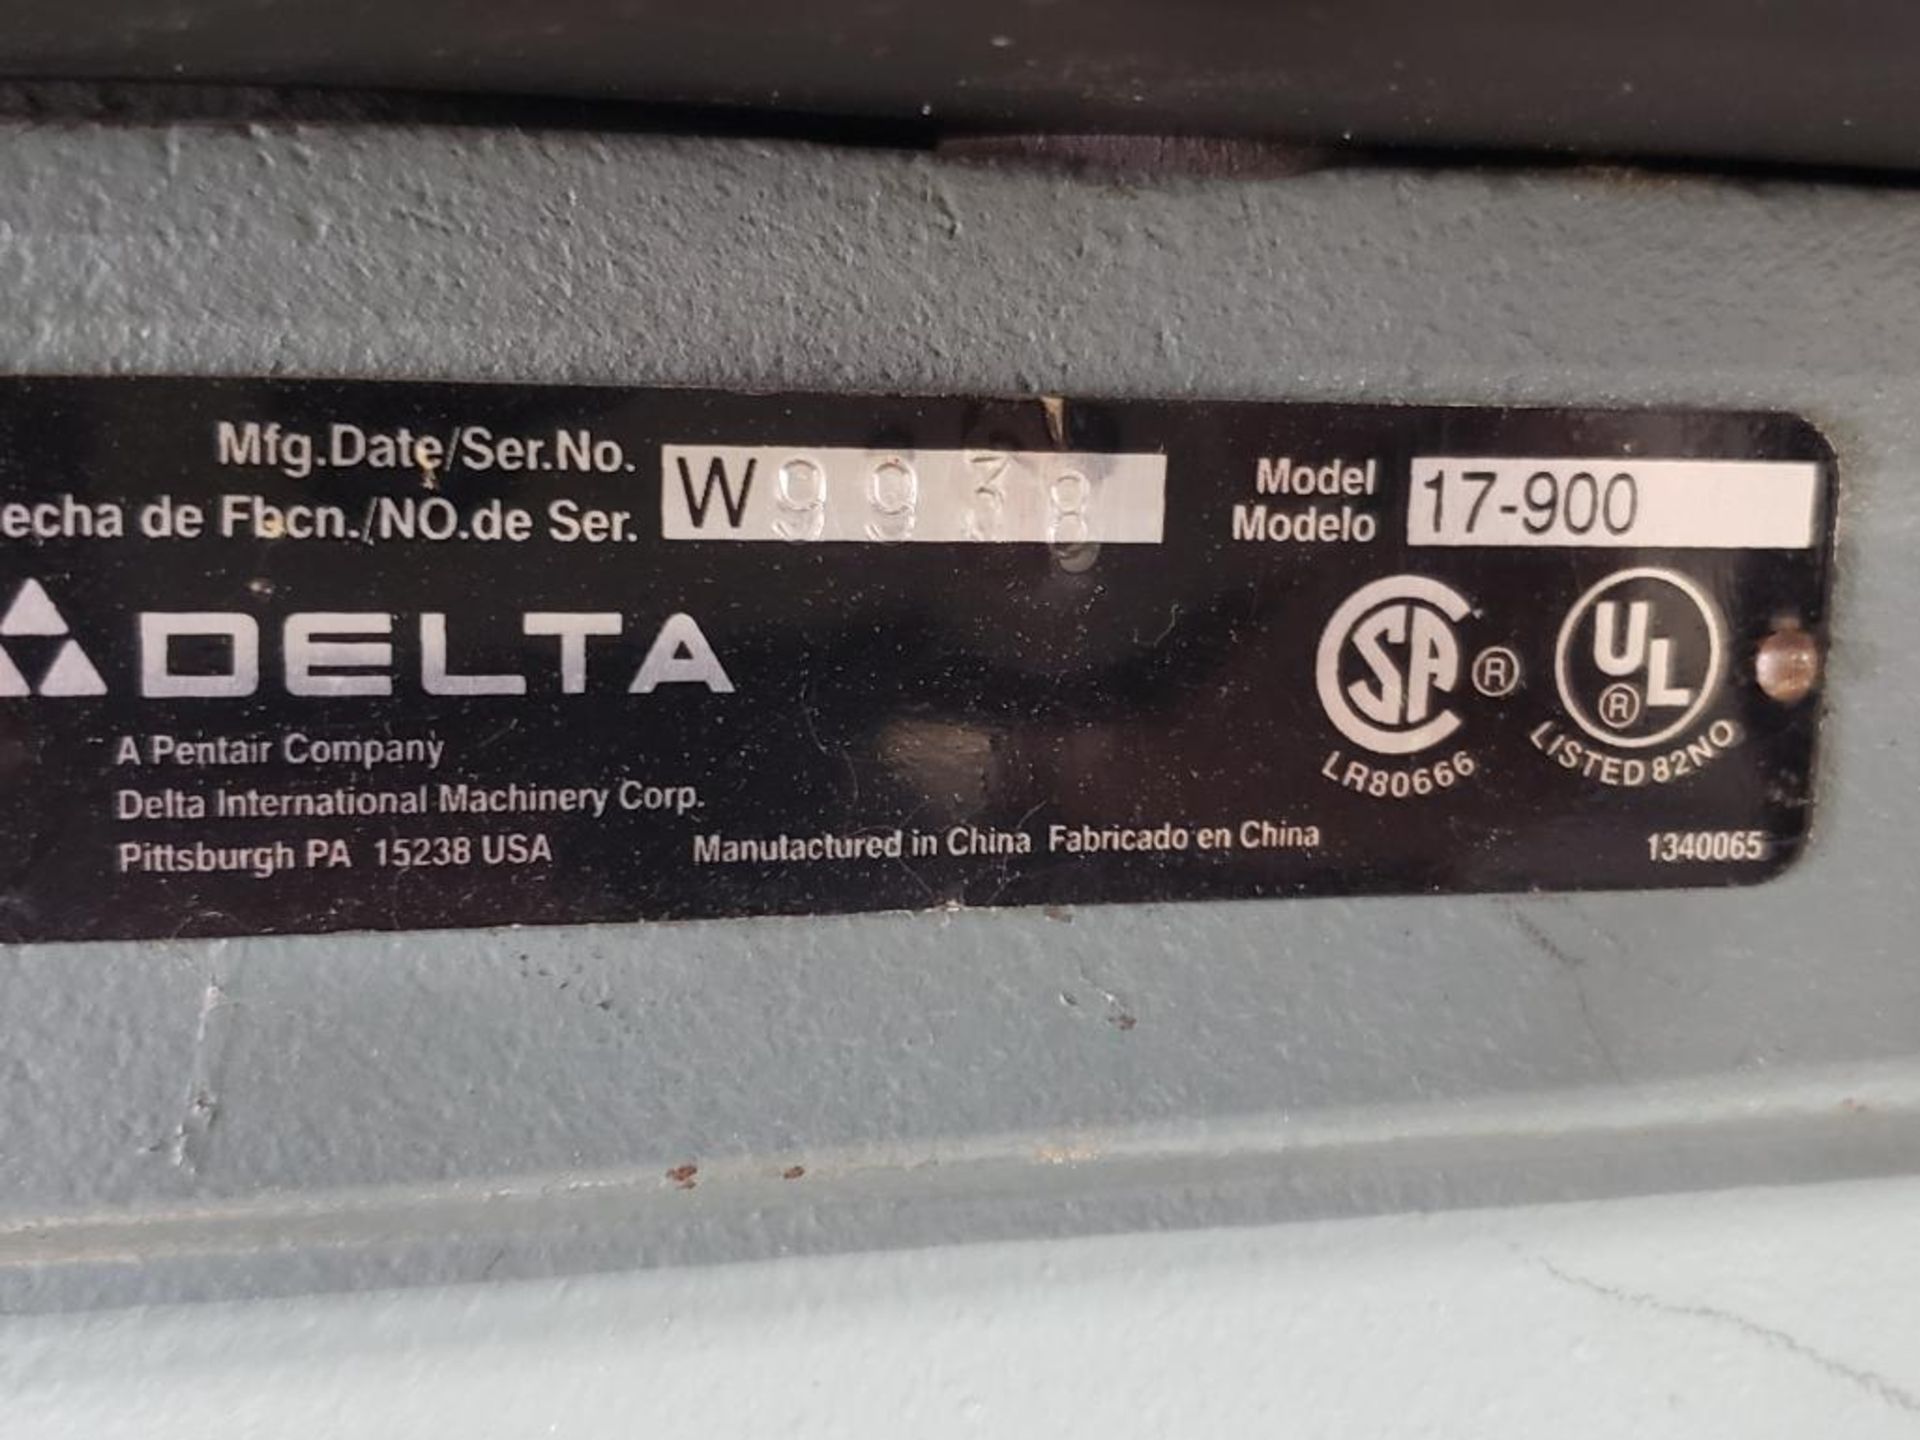 Delta 17-900 16.5" Drill Press, S/N W9938 - Image 3 of 3